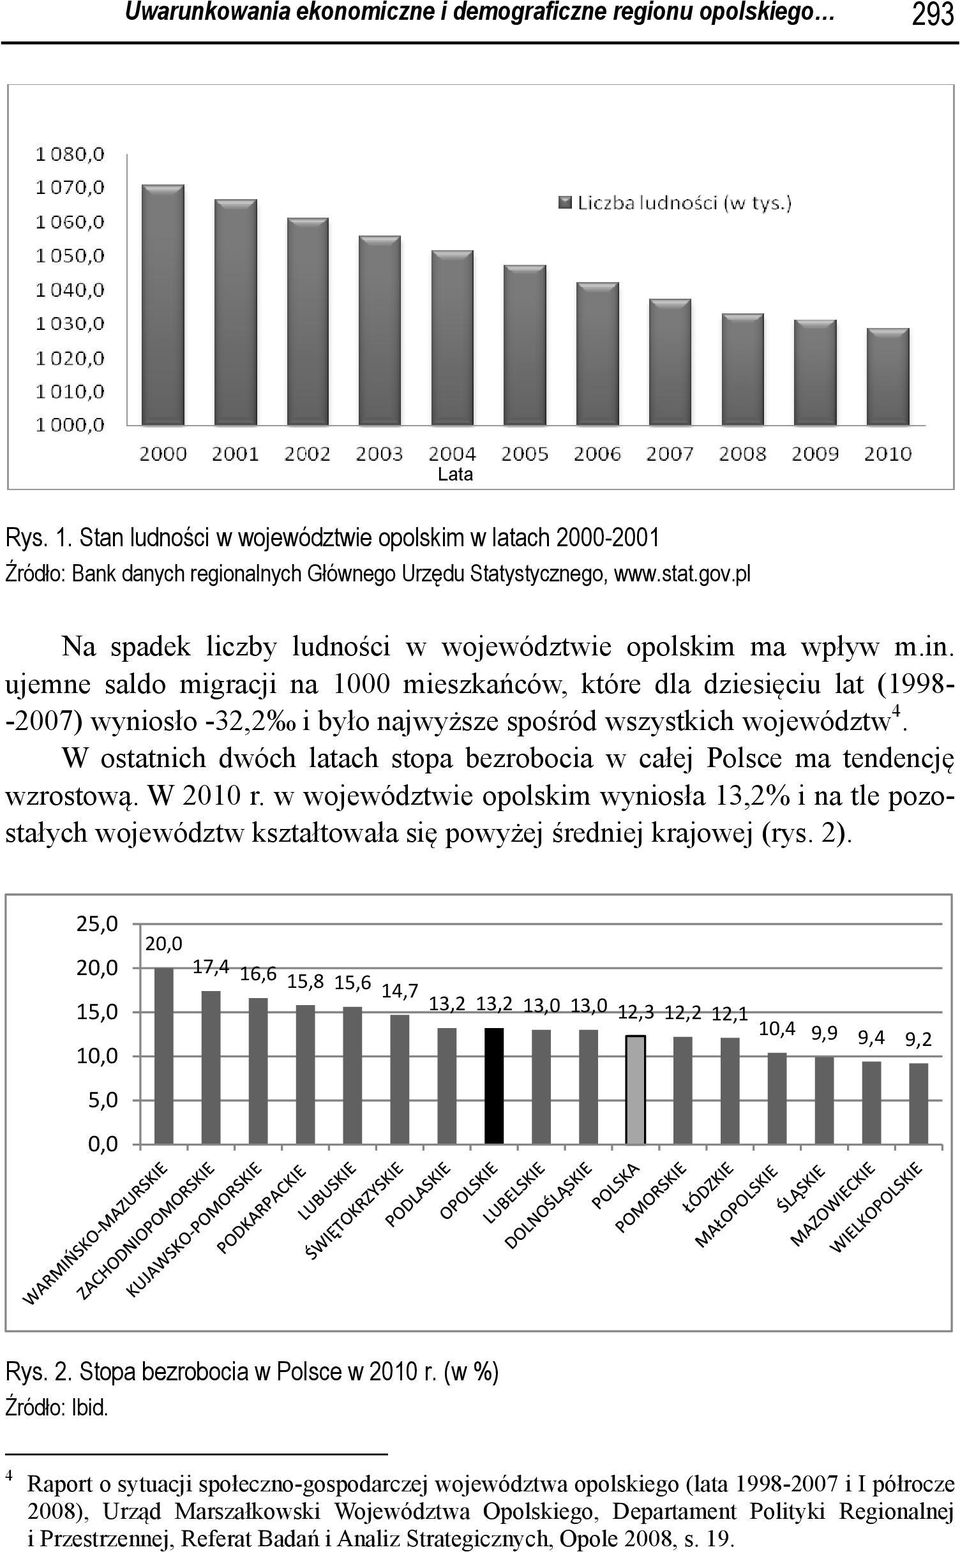 W ostatnich dwóch latach stopa bezrobocia w całej Polsce ma tendencję wzrostową. W 2010 r. wyniosła 13,2% i na tle pozostałych województw kształtowała się powyżej średniej krajowej (rys. 2).